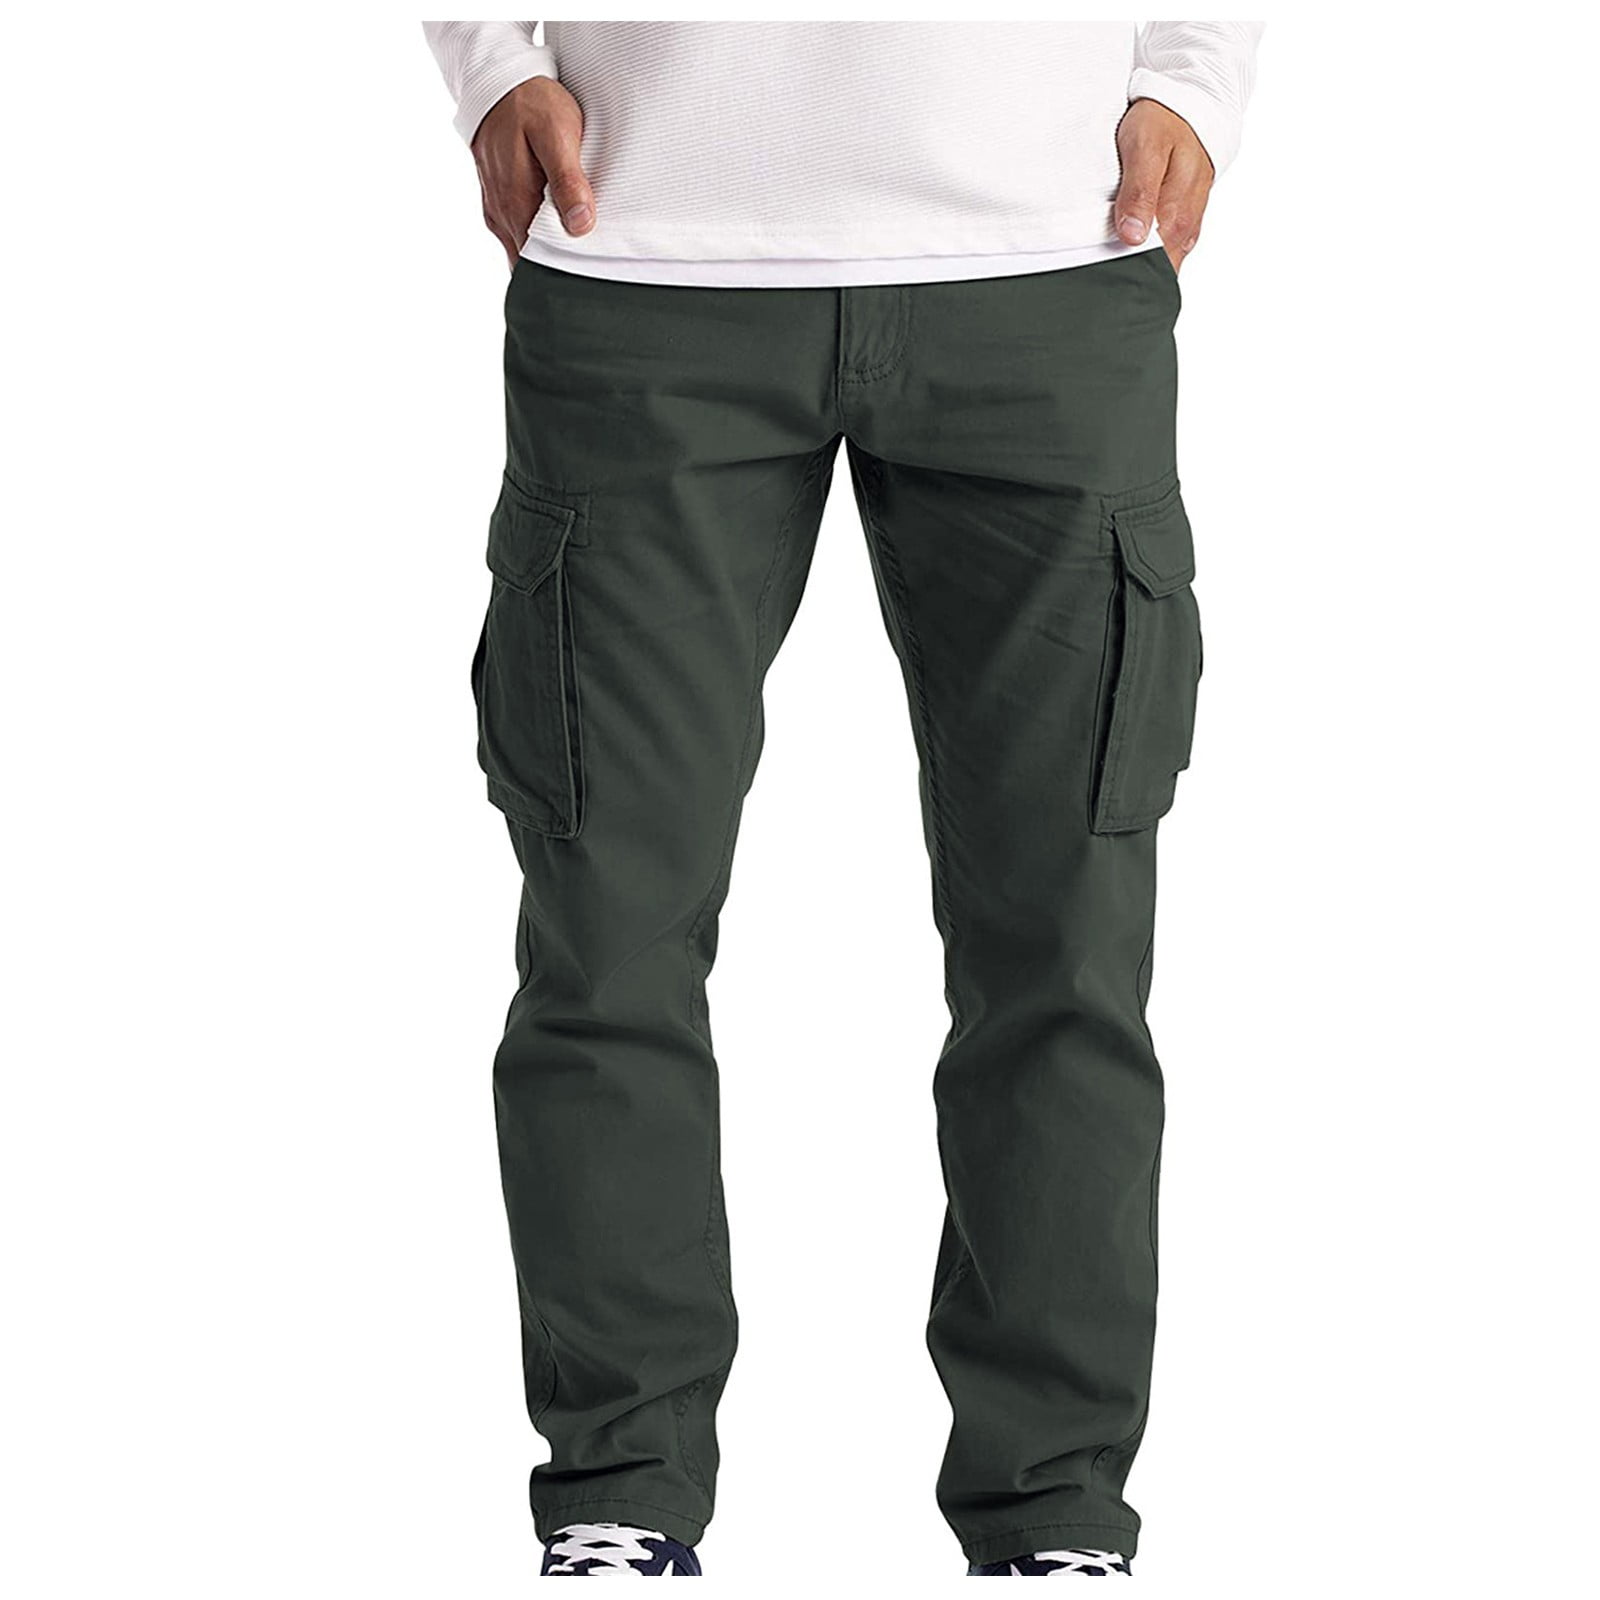 Fseason-Men Rugged Wear Long Pants with Side Pockets Cargo Trousers 